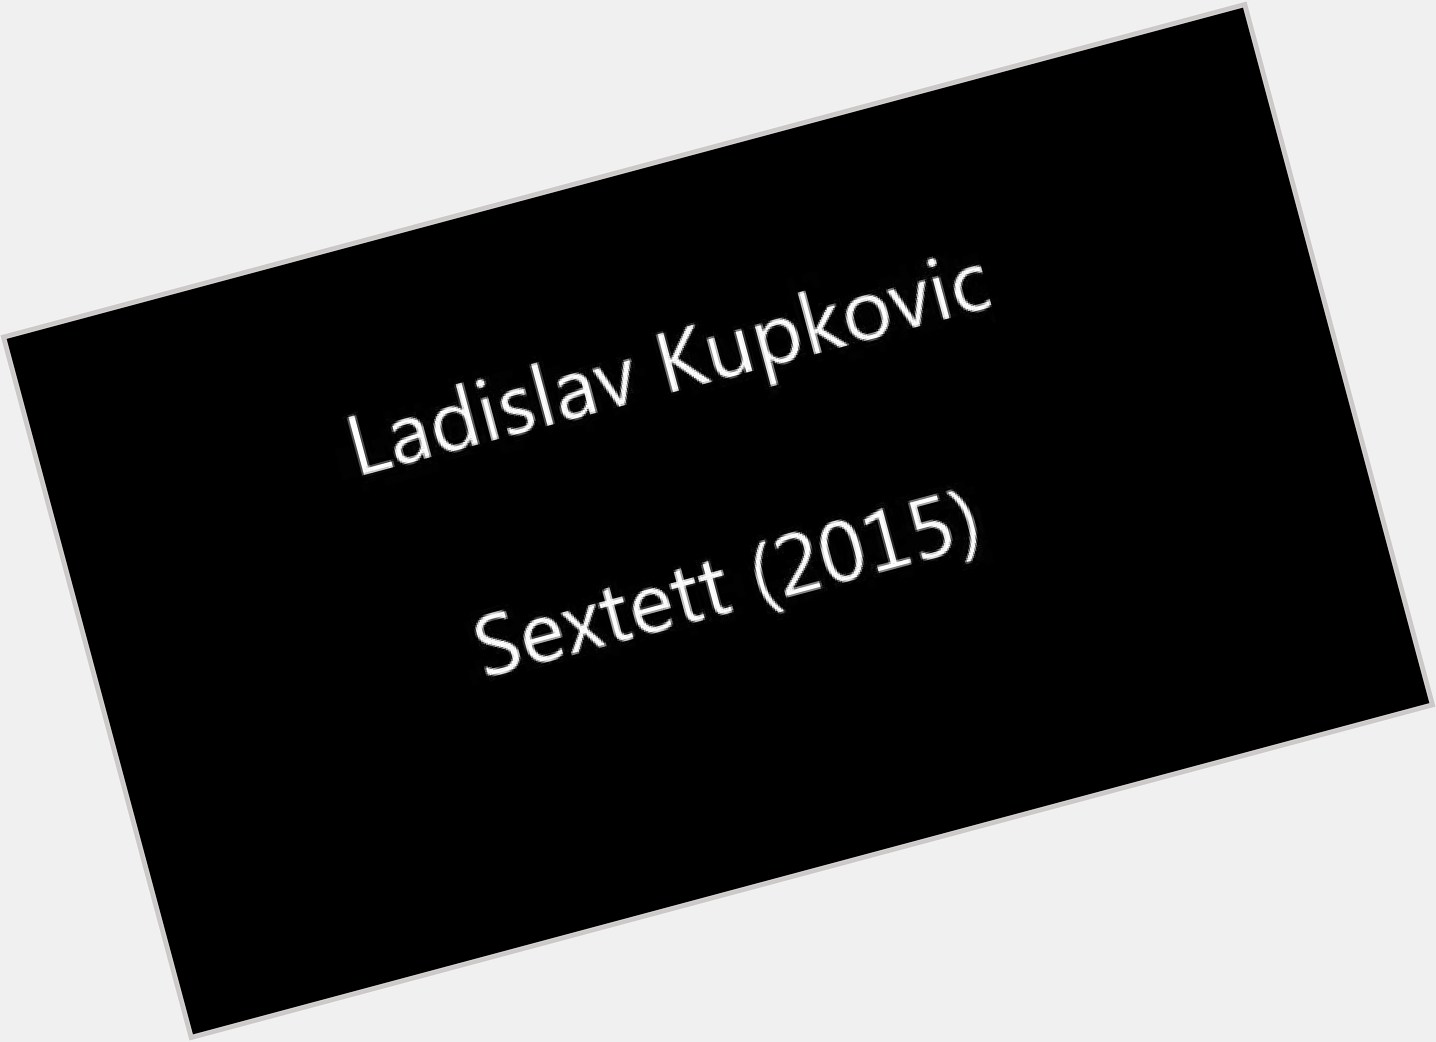 Ladislav Kupkovic dating 2